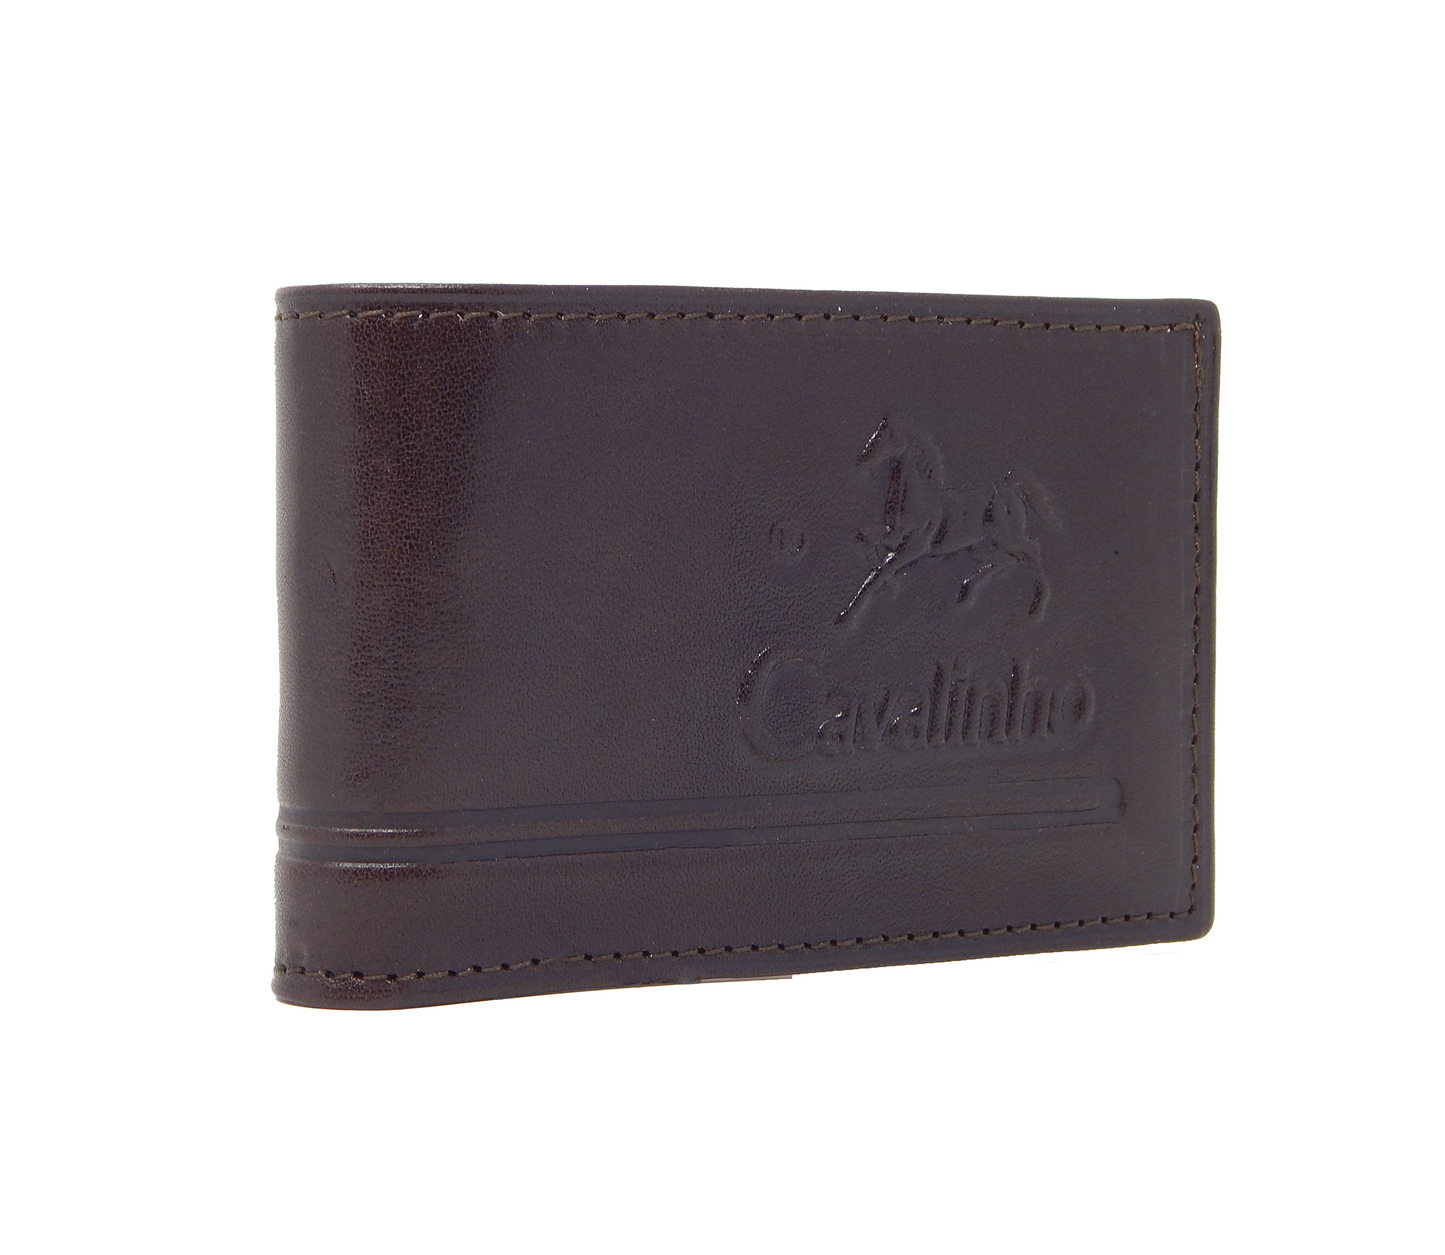 Cavalinho Men's Bifold Leather Wallet - Brown - 28160585.02_2